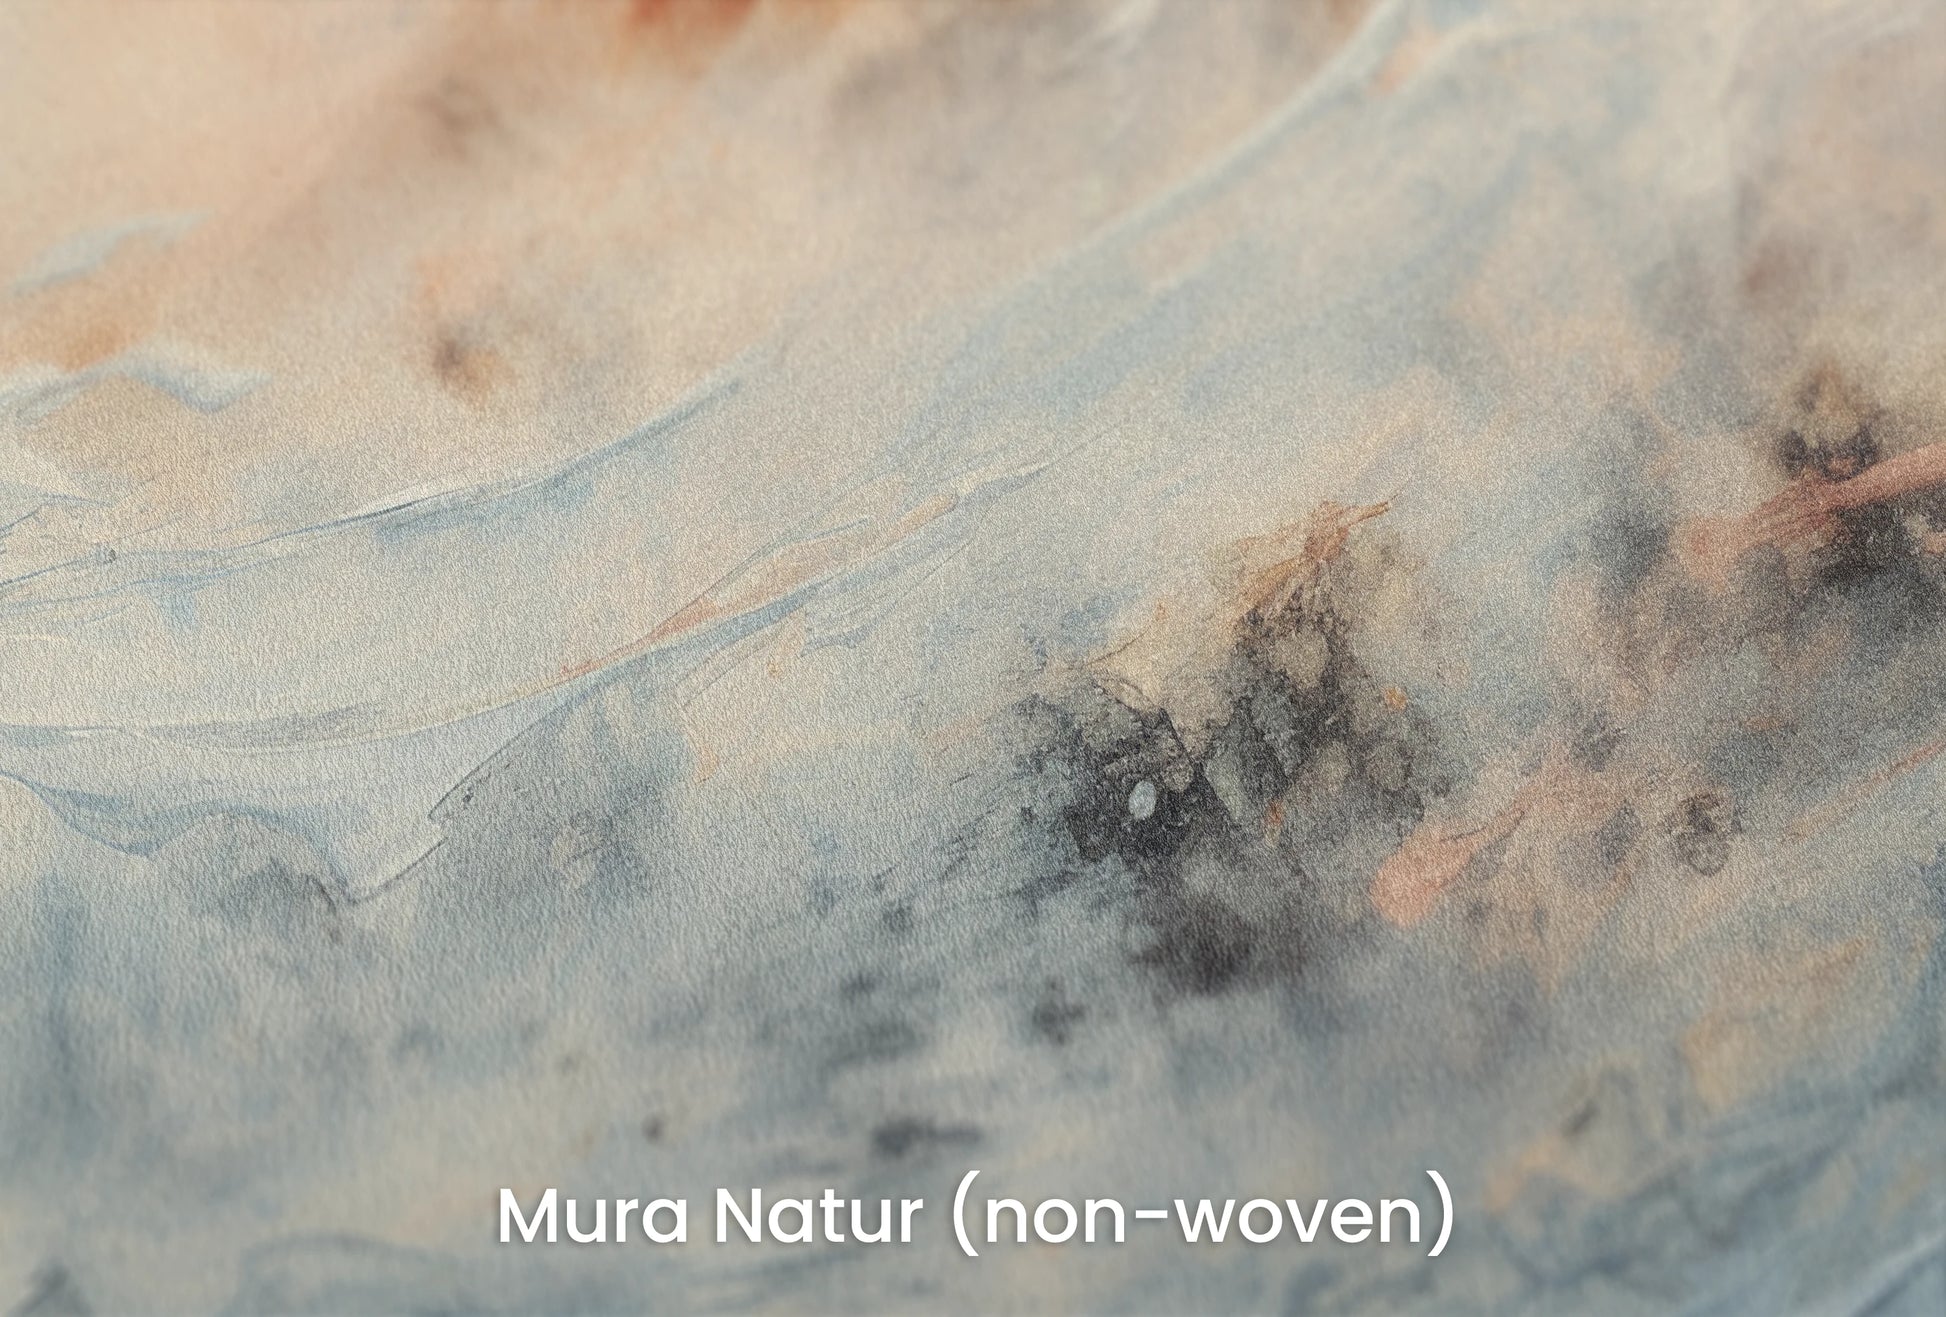 Zbliżenie na artystyczną fototapetę o nazwie Moon's Tranquility na podłożu Mura Natur (non-woven) - naturalne i ekologiczne podłoże.